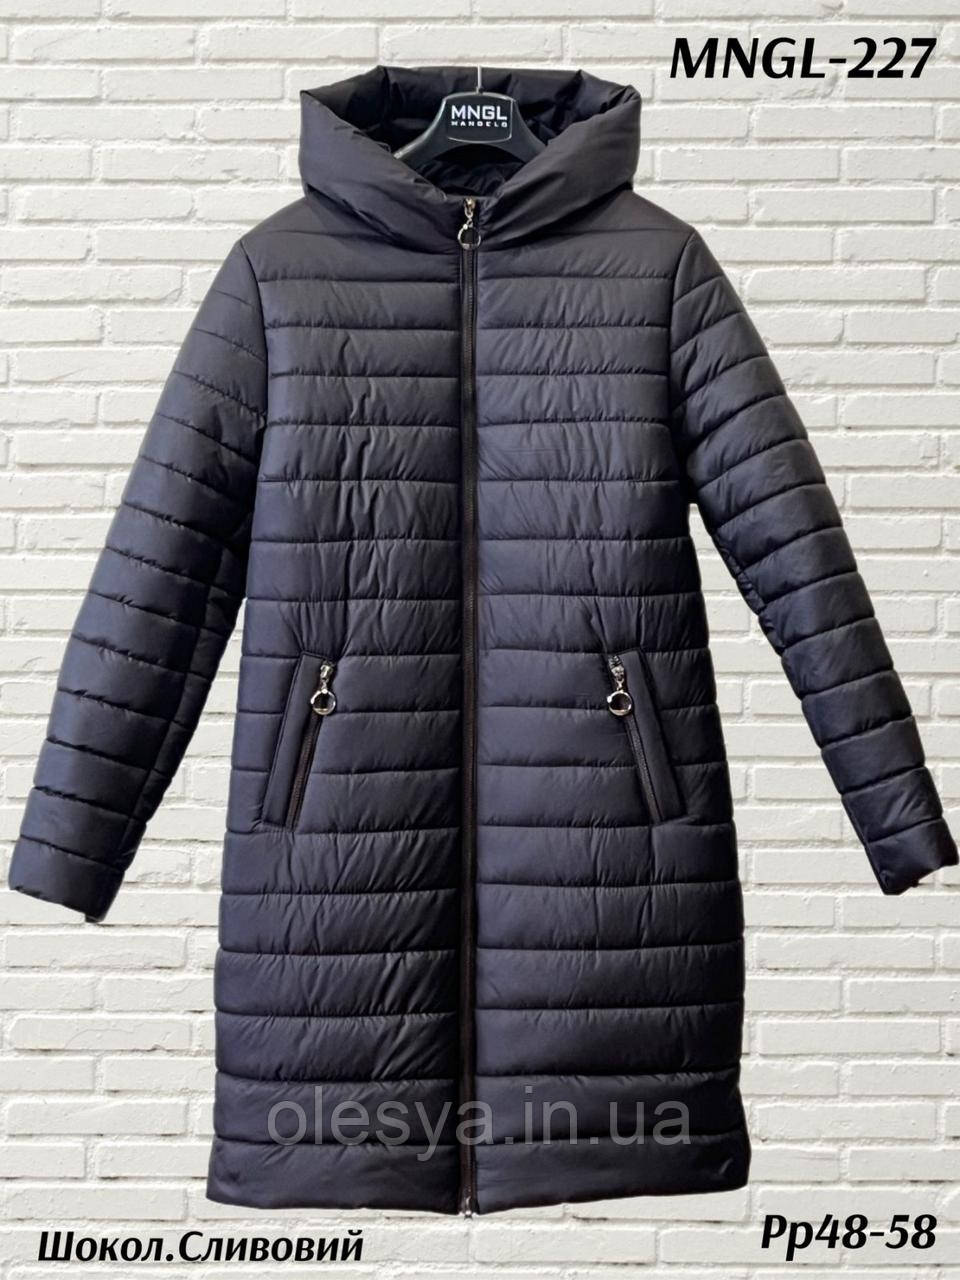 Куртка зимова жіноча 227 тм Mangelo Розміри 60